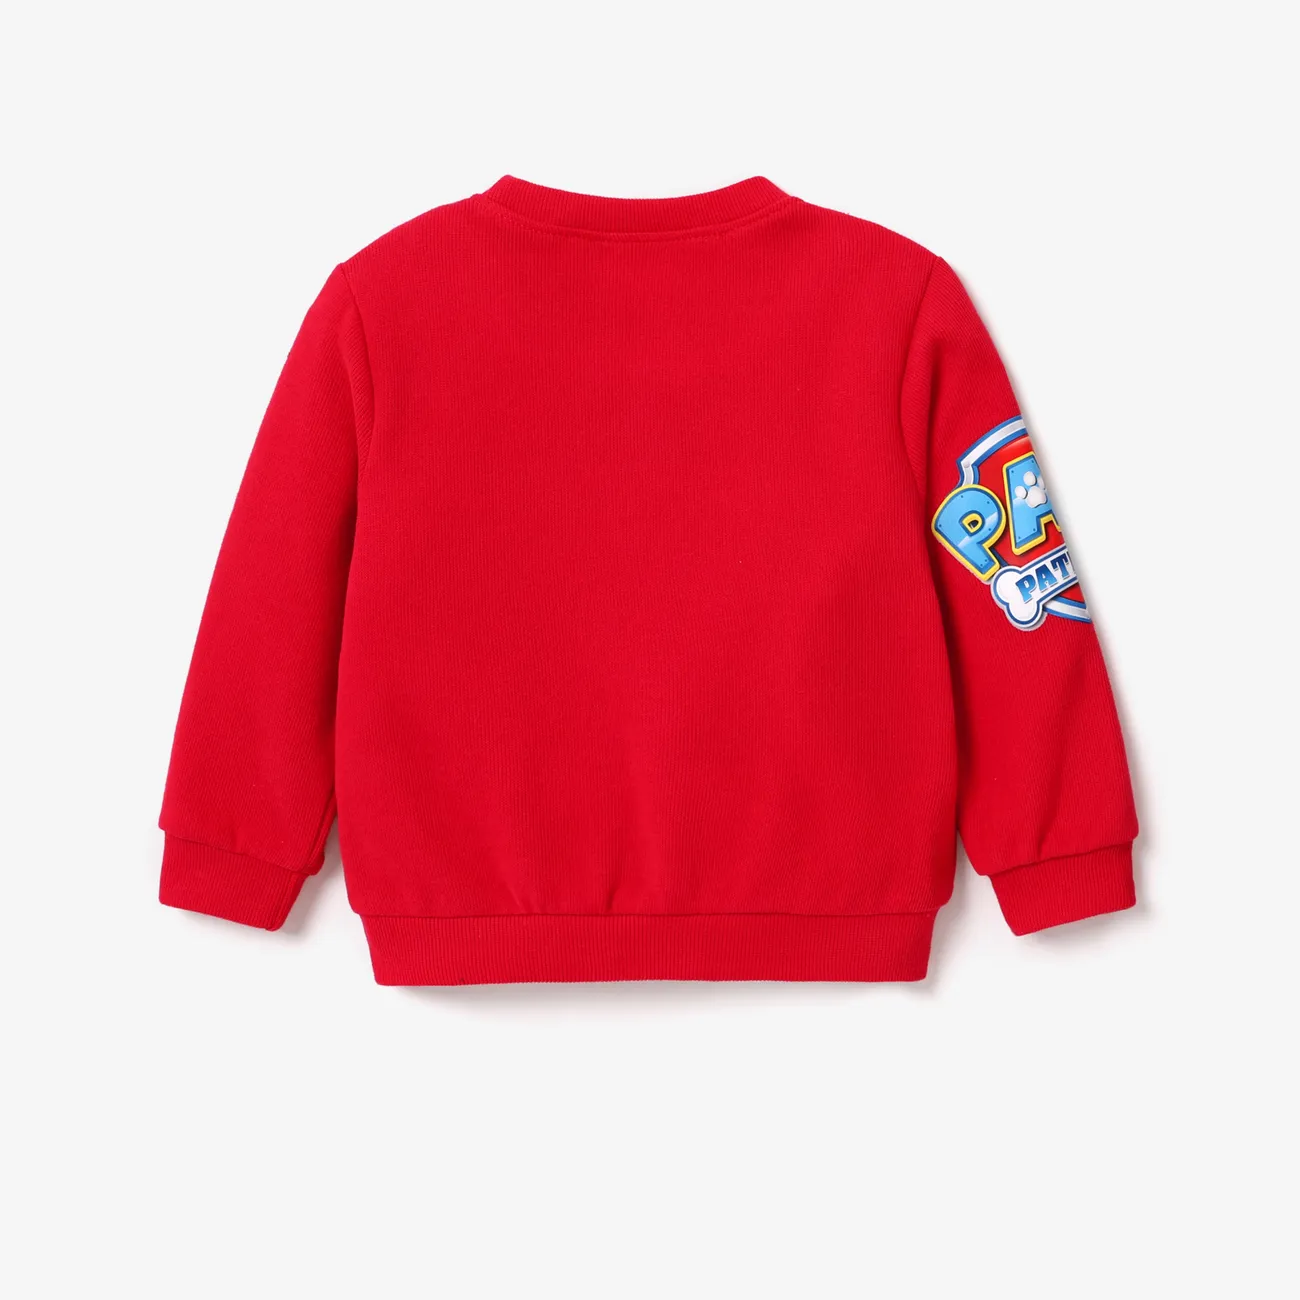 Helfer auf vier Pfoten Kleinkinder Jungen Kindlich Sweatshirt-Sets rot big image 1